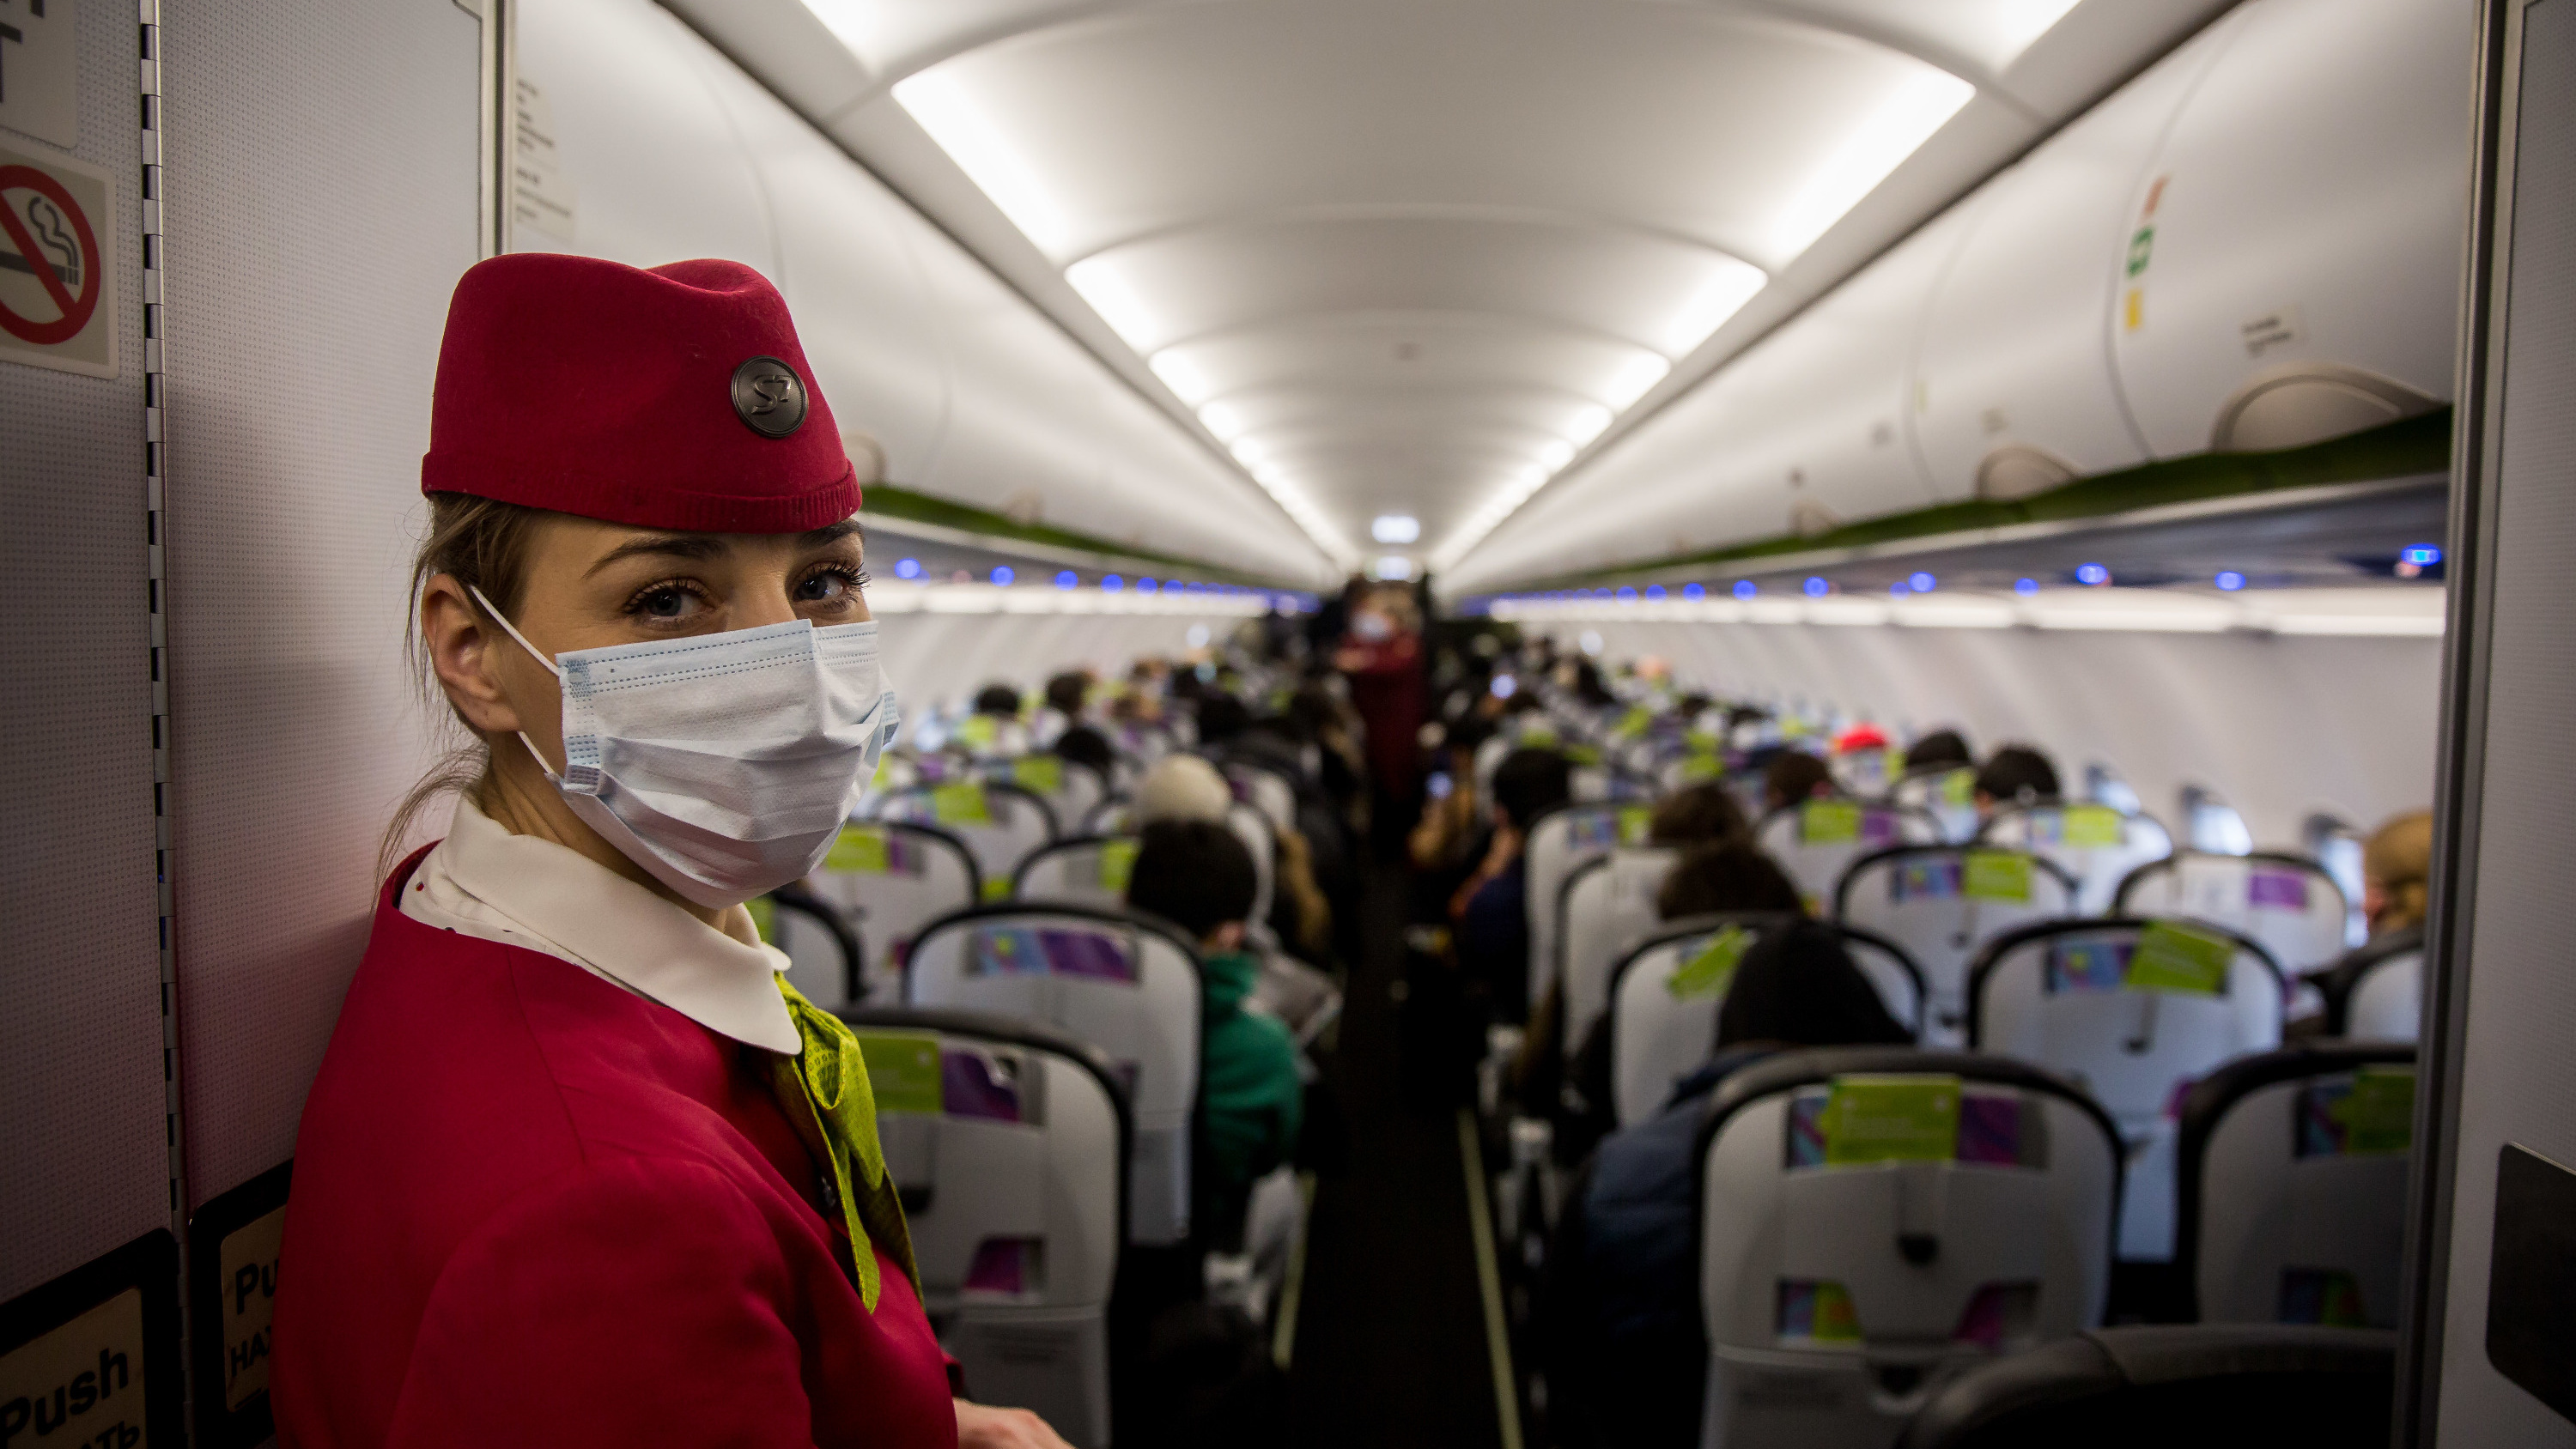 Репортаж в защитных масках — как в аэропорту ищут приезжих из Китая и Таиланда, зараженных коронавирусом